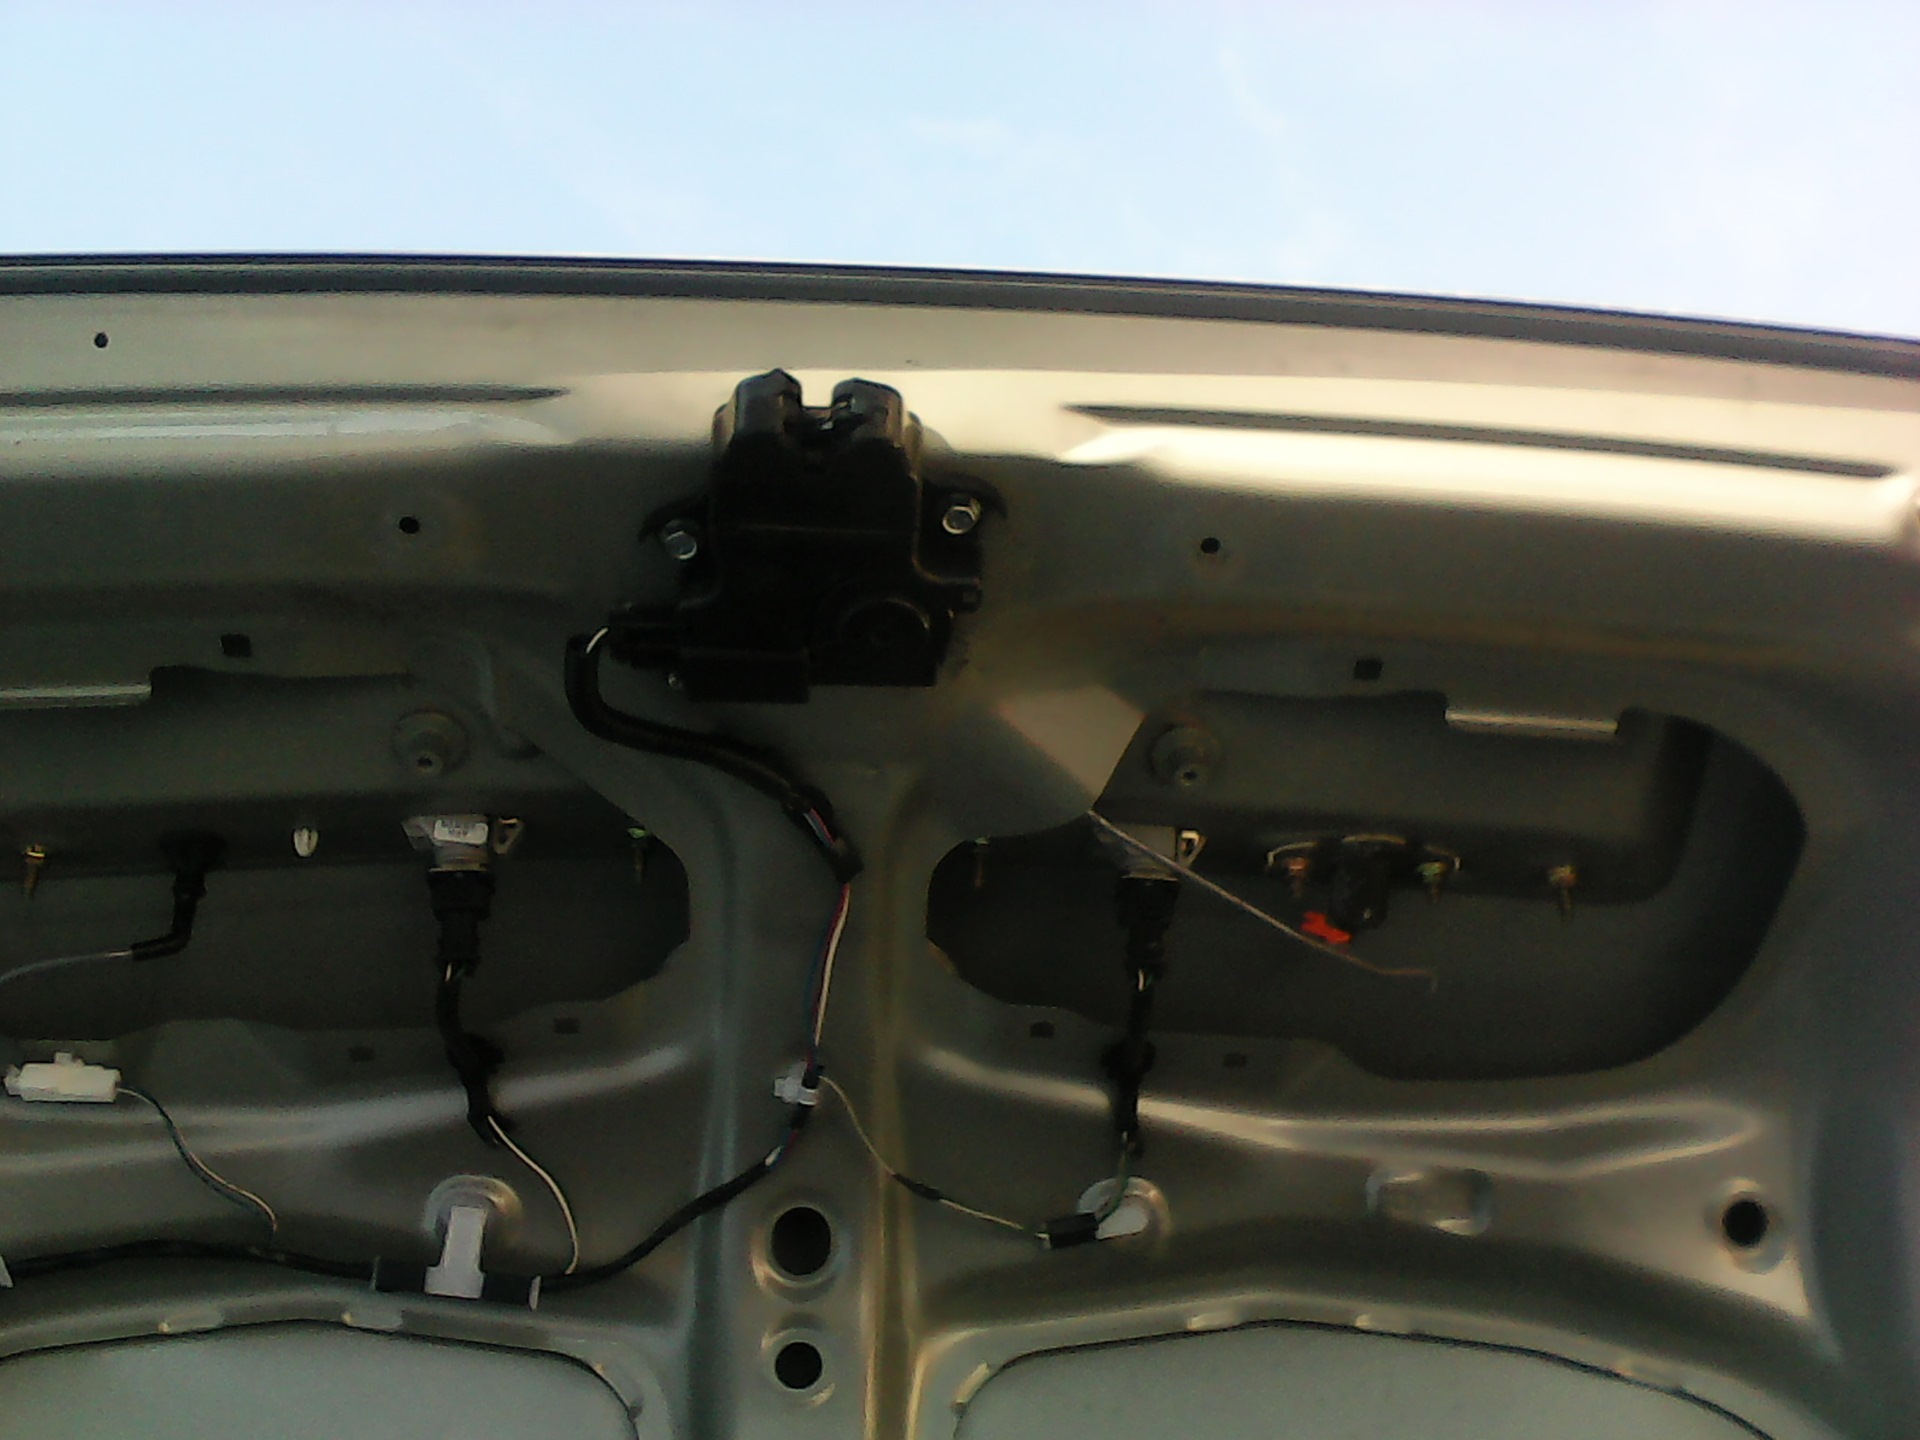 Тойота авенсис 2007 как открыть багажник изнутри